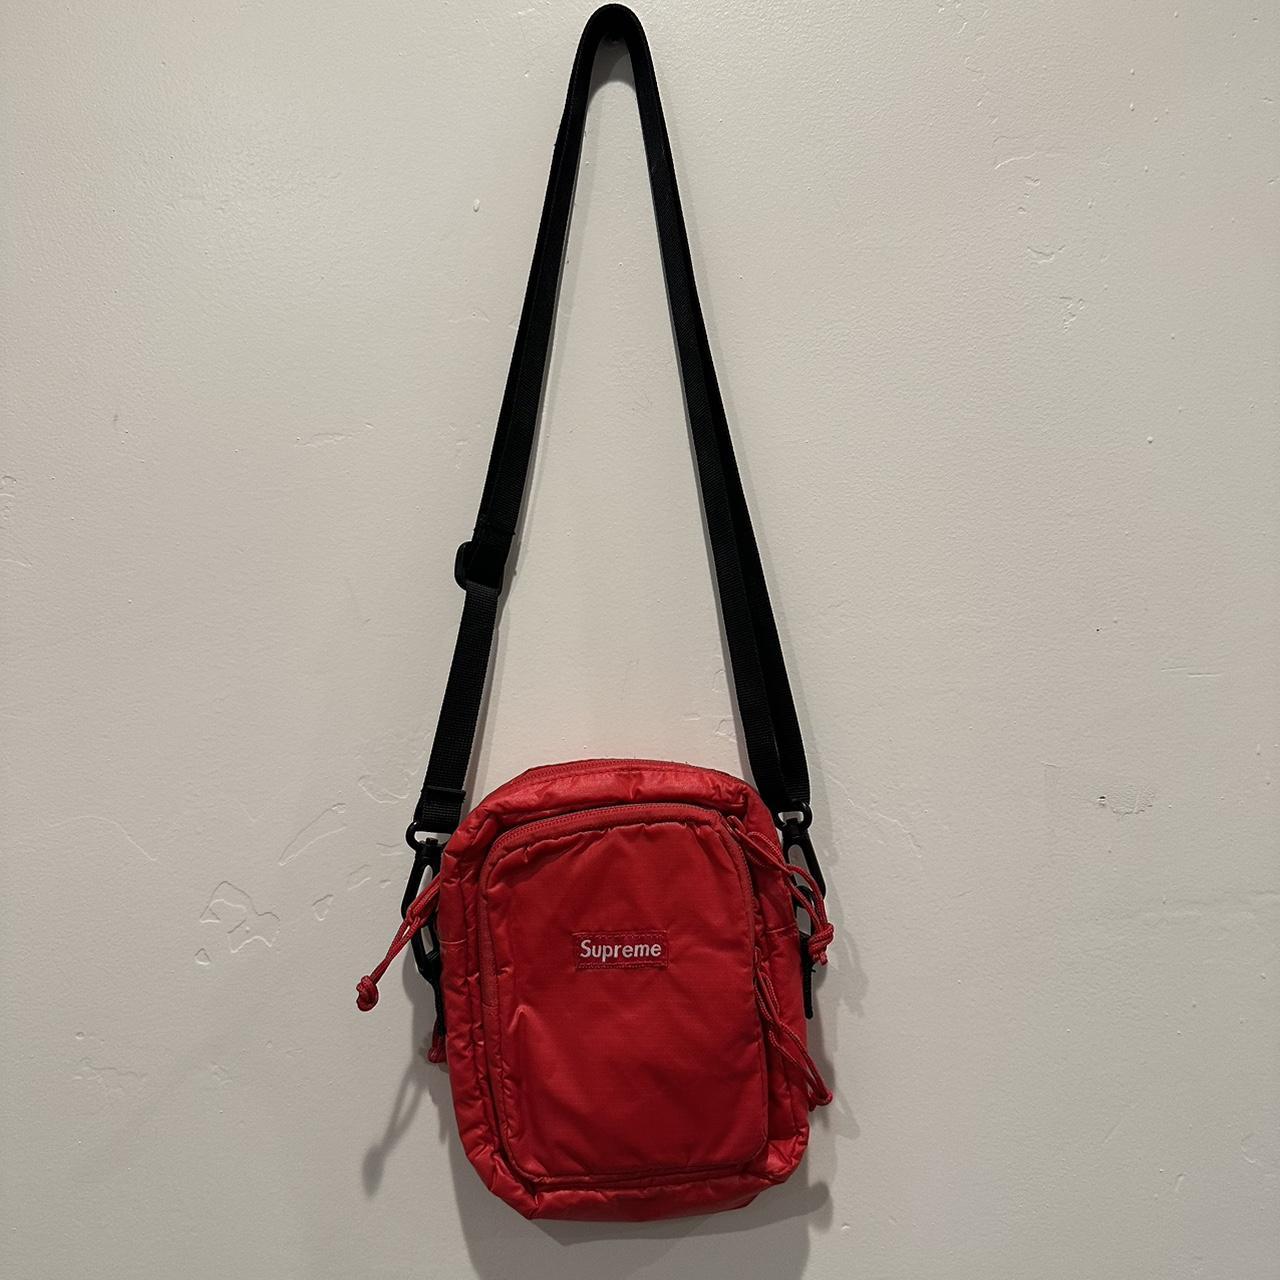 supreme sling bag price